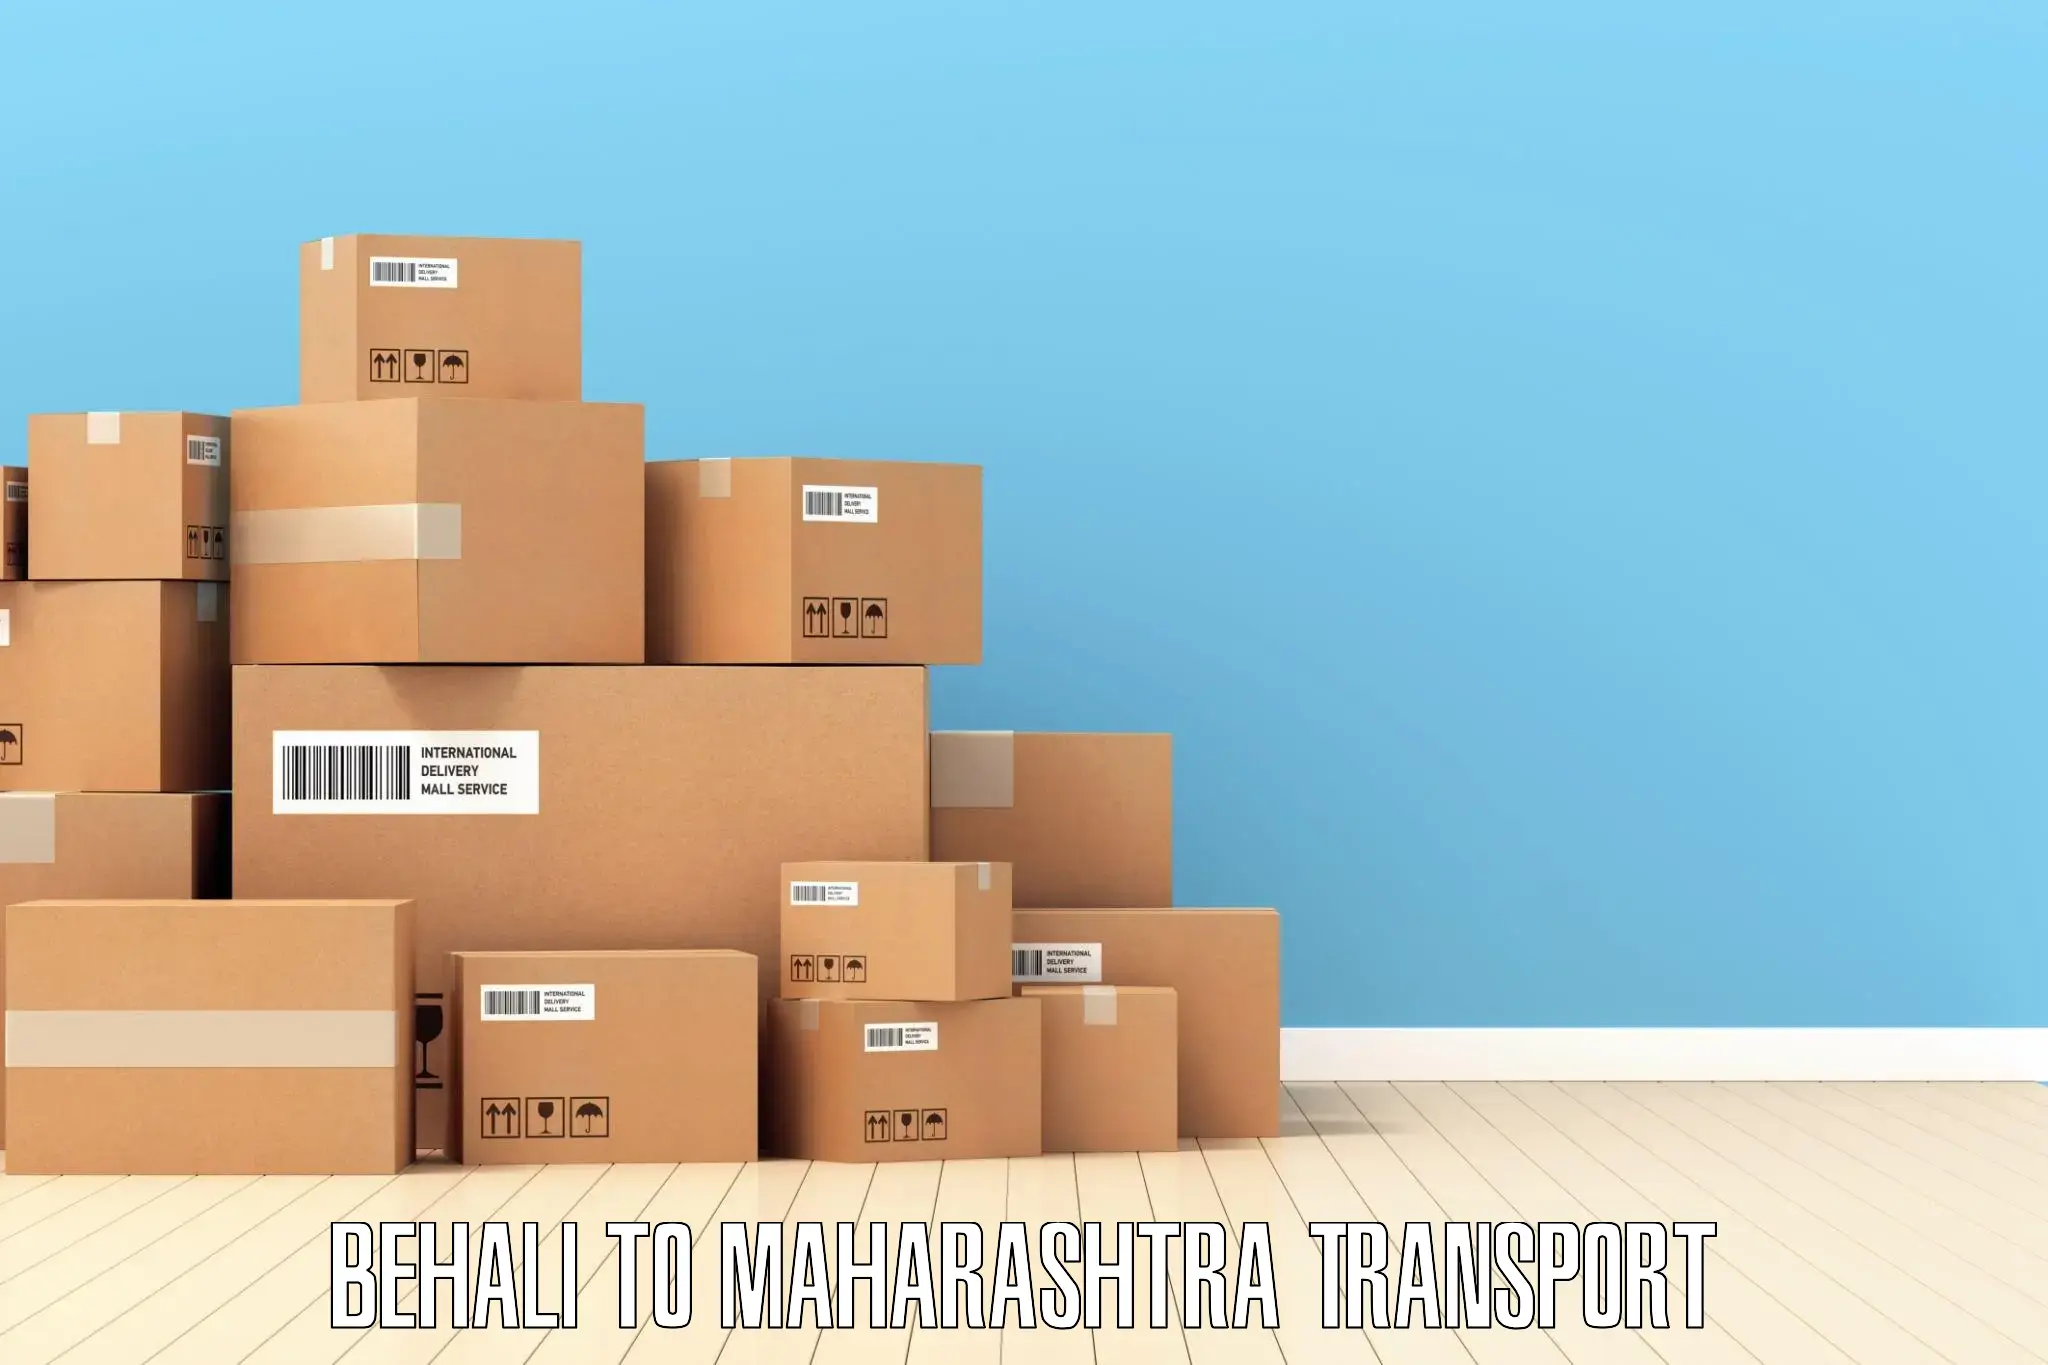 Daily parcel service transport Behali to Maharashtra